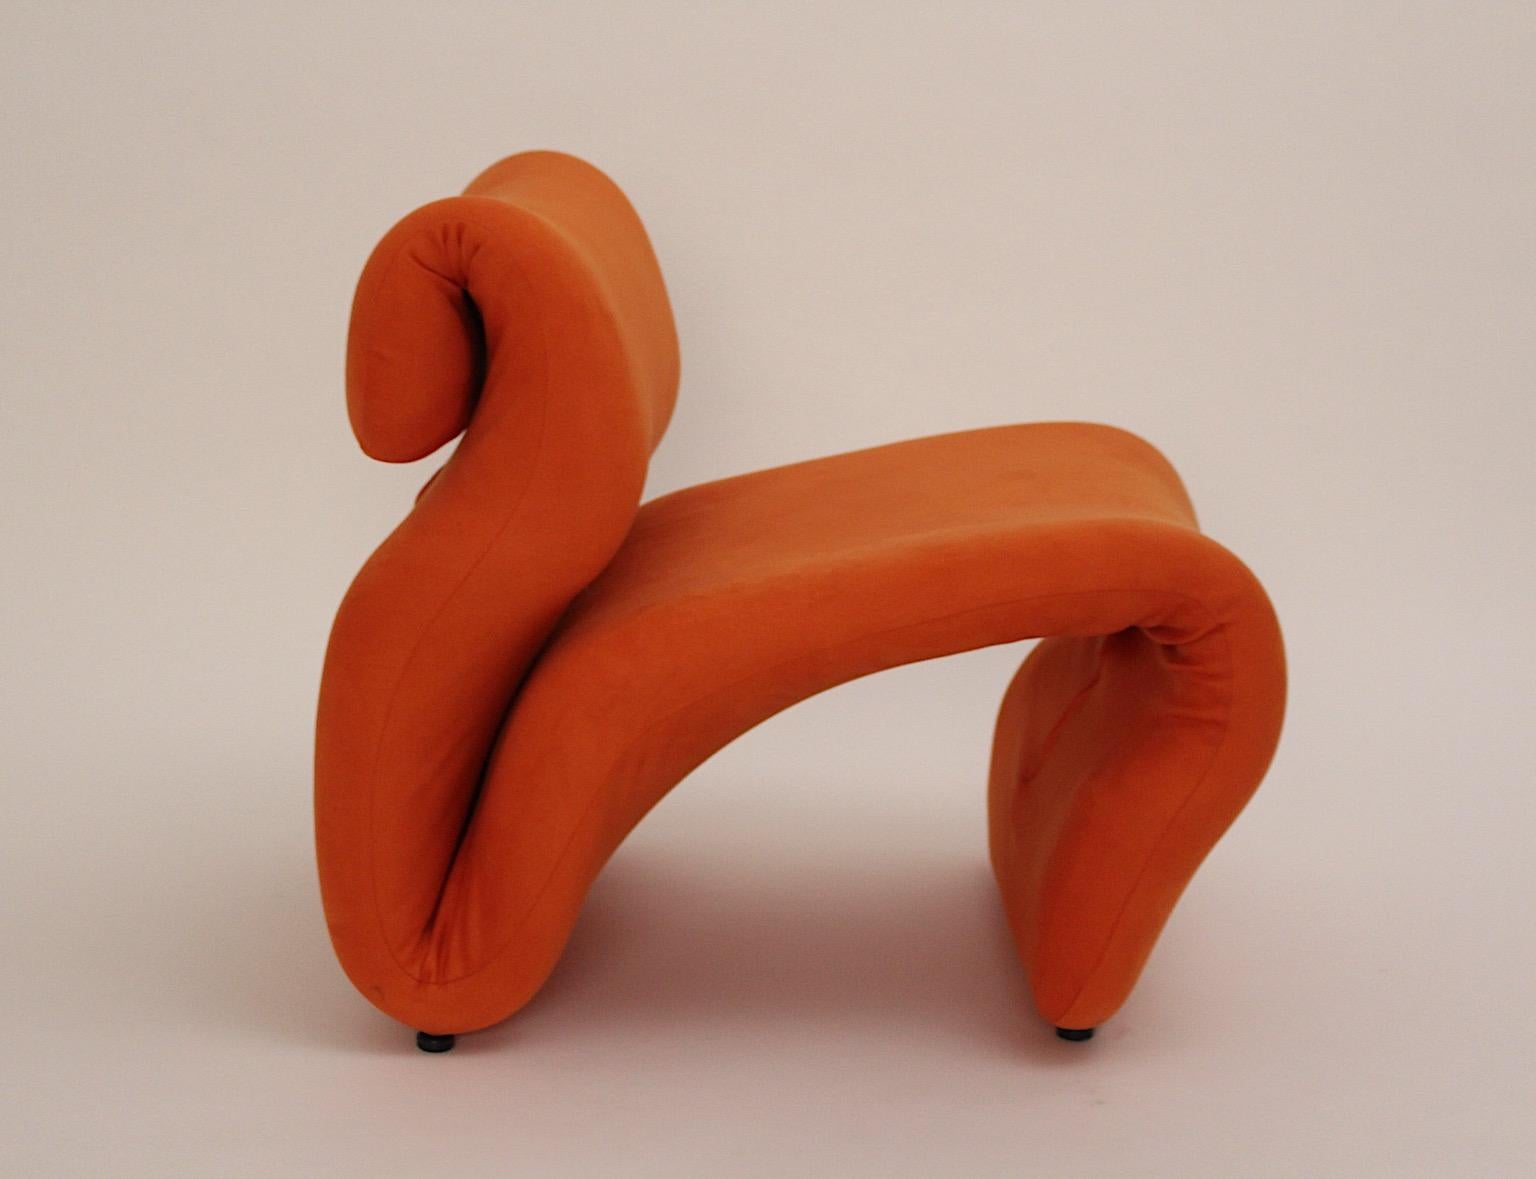 Space Age Vintage Sculptural Orange Etcetera Chair by Jan Ekselius 1970s Sweden 2